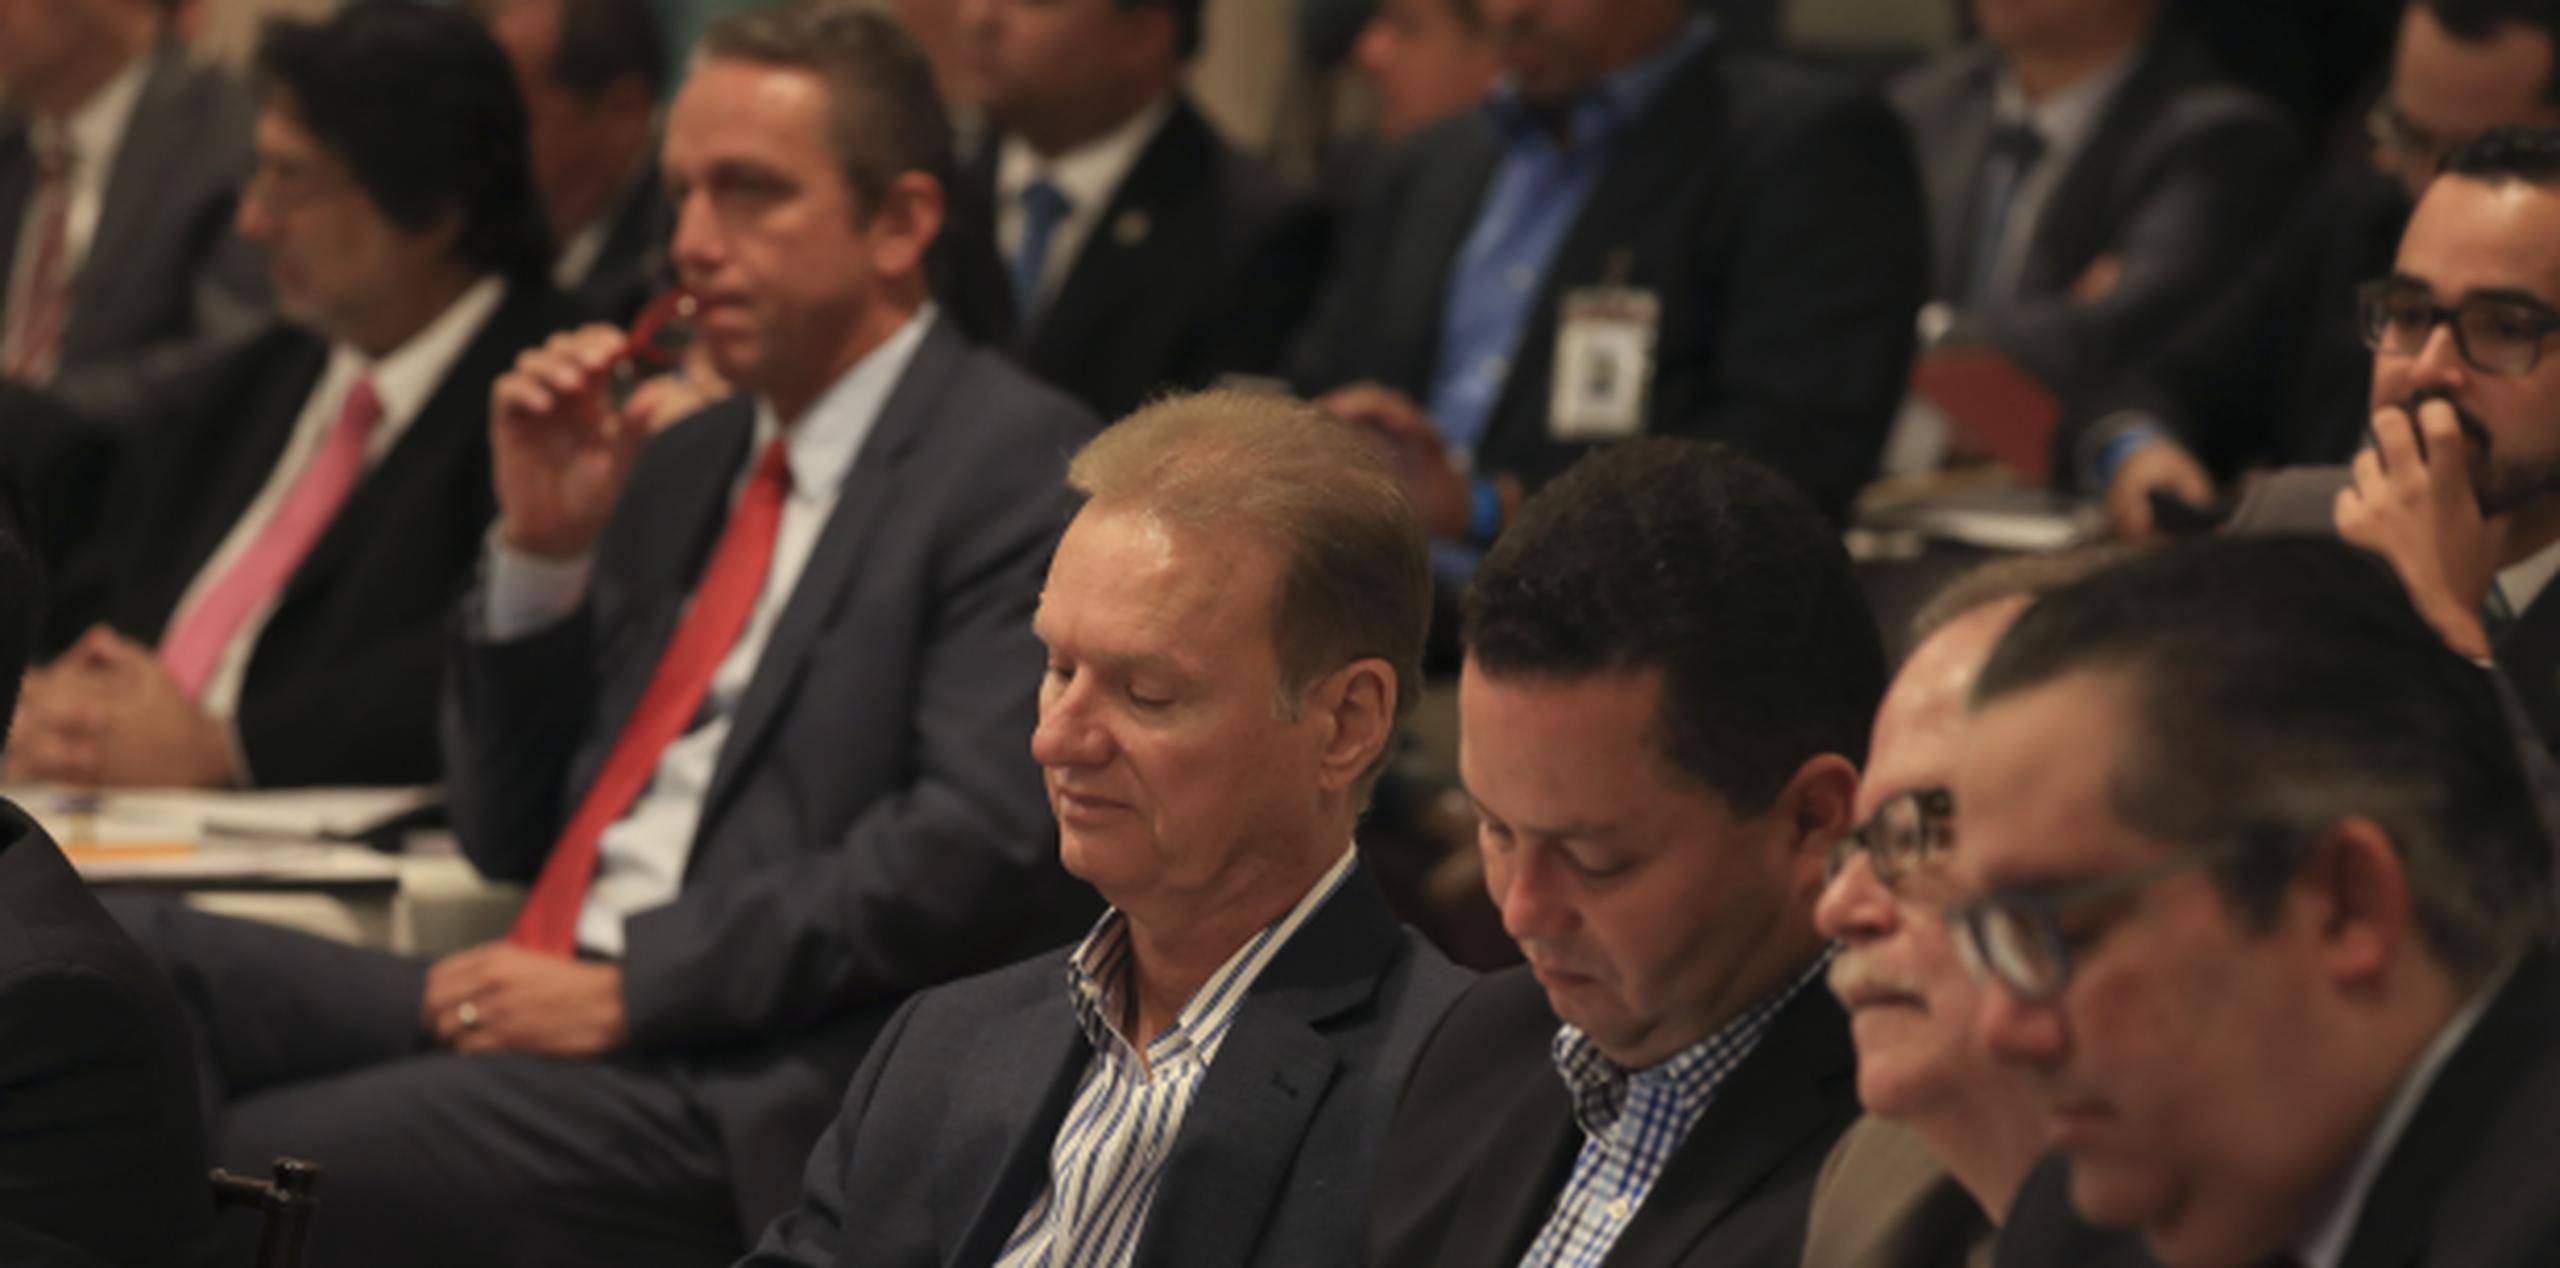 Al evento acudieron alcaldes novoprogresistas, como Ángel Pérez de Guaynabo y Ramón Luis Rivera de Bayamón, así como populares, como el de Trujillo Alto, José Luis Cruz y Juan Carlos García padilla, de Coamo. (TERESA.CANINO@GFRMEDIA.COM_